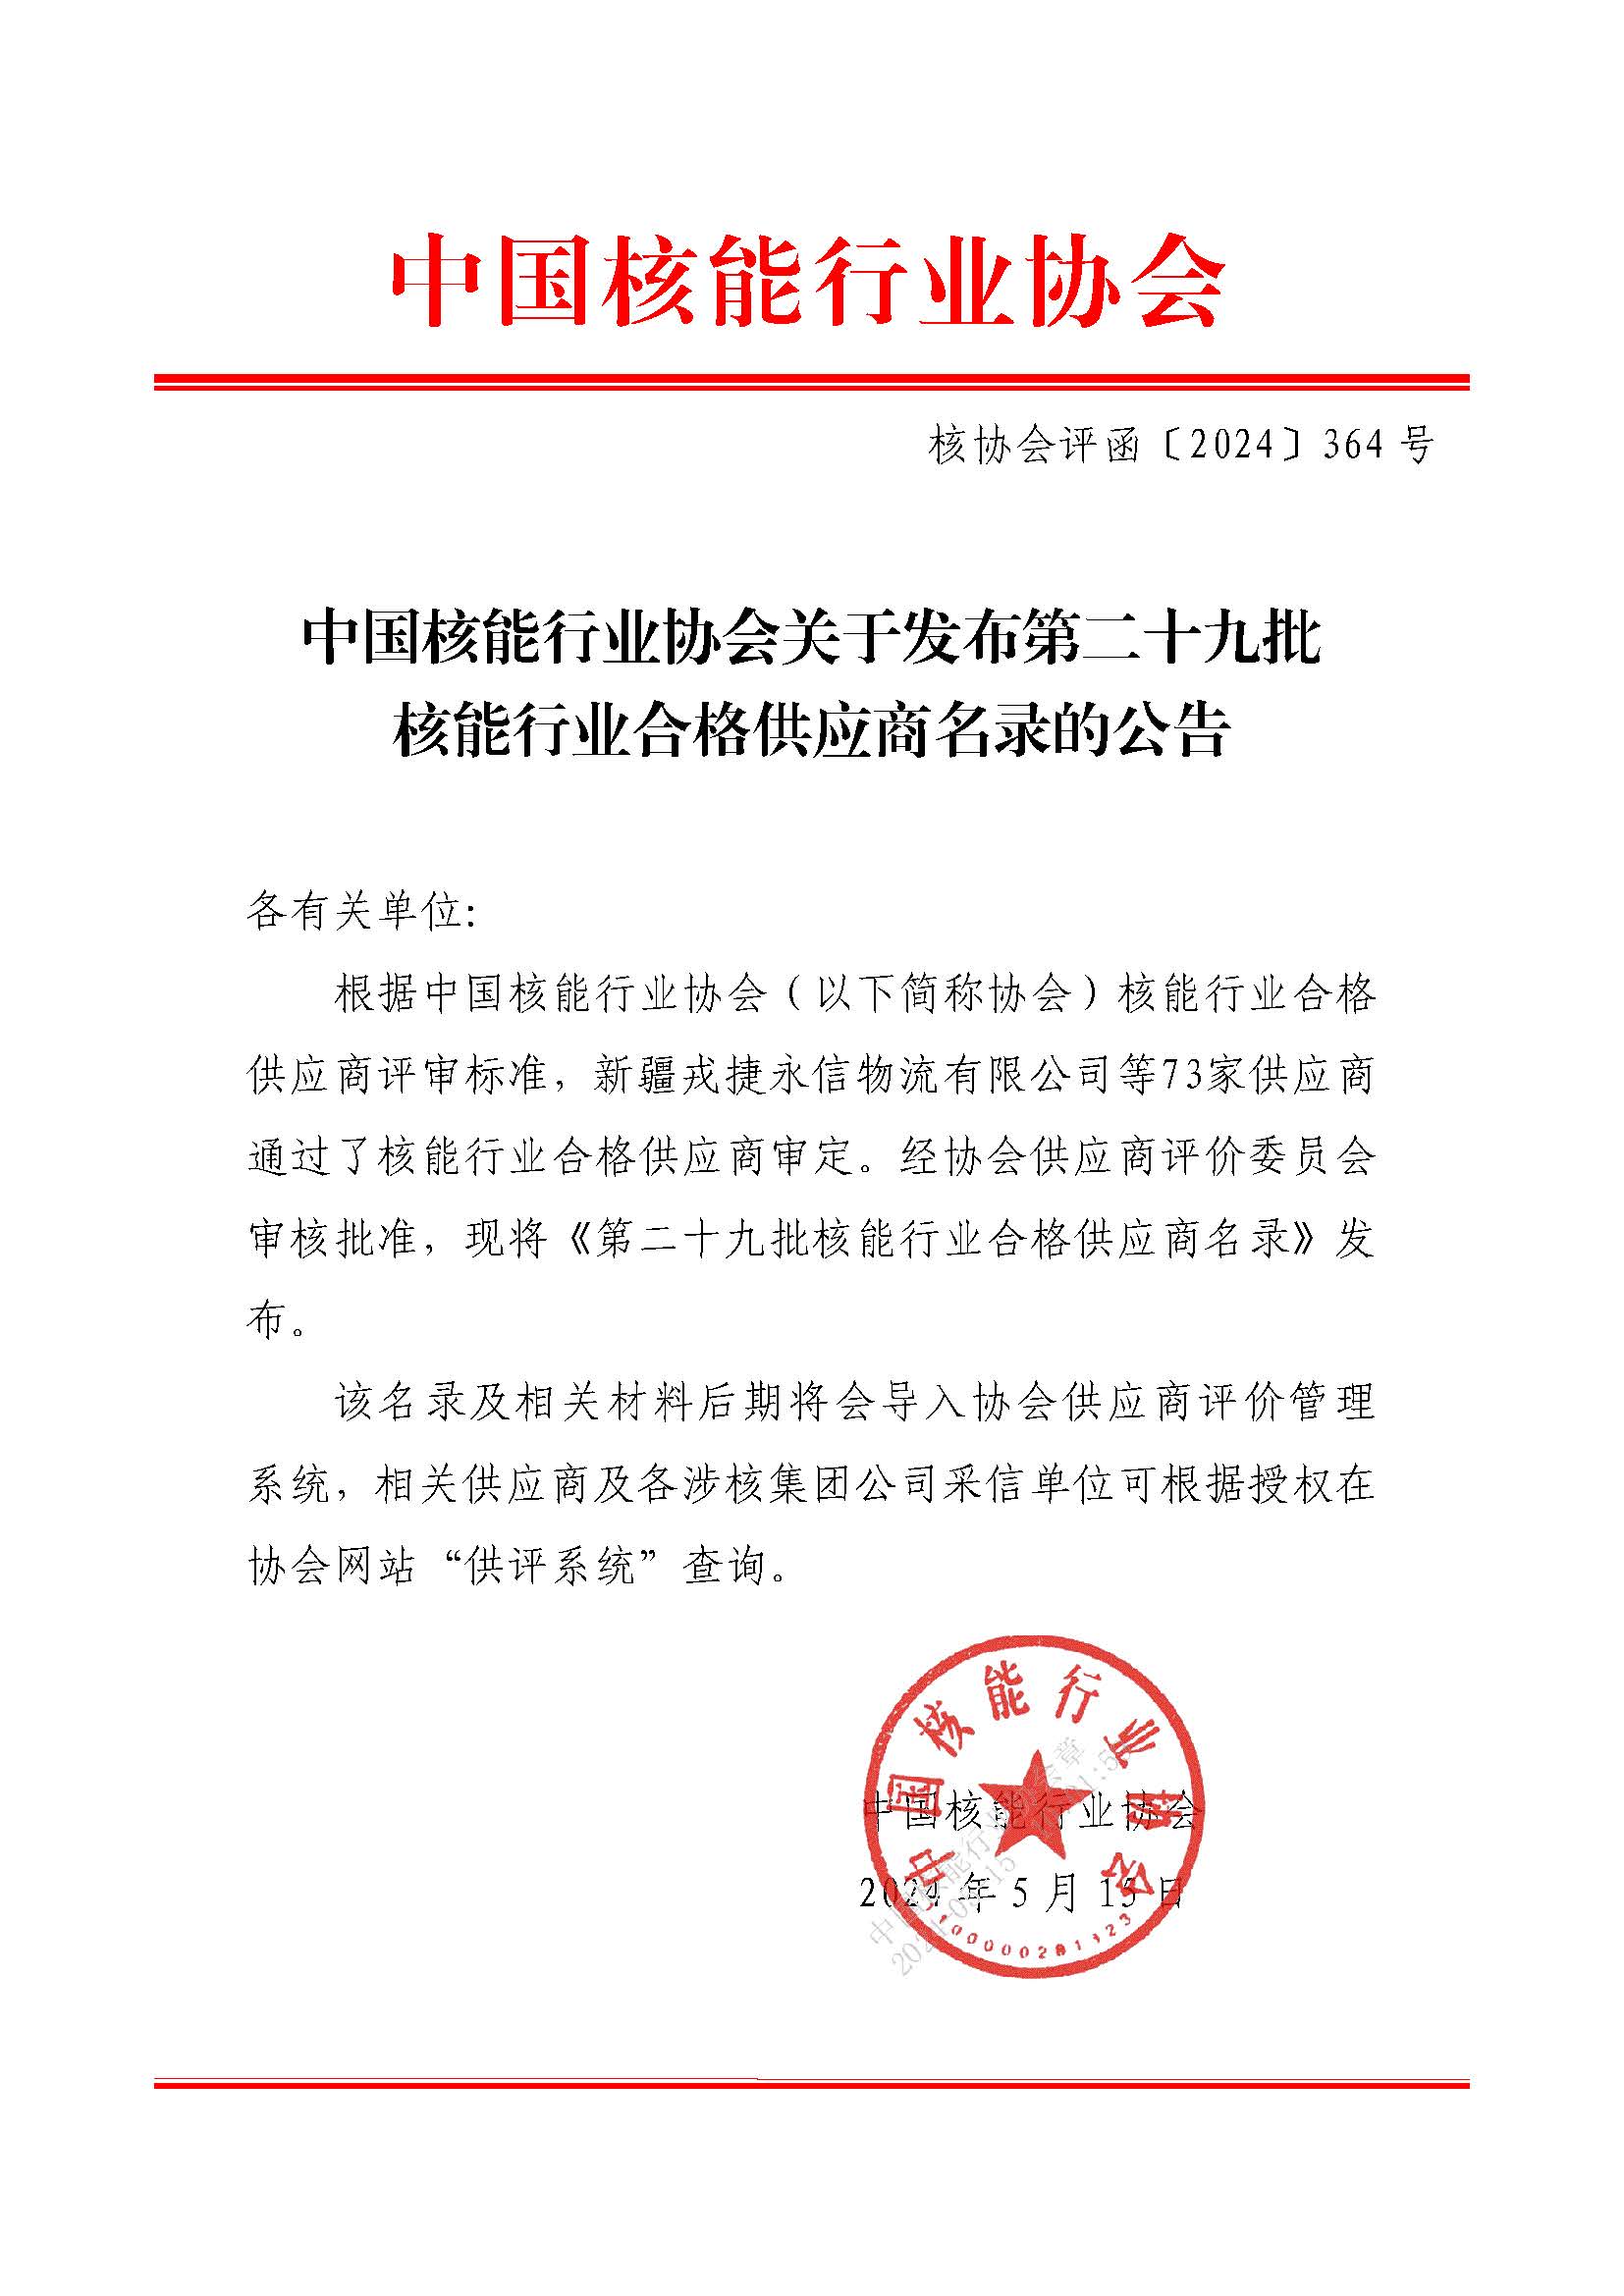 中国核能行业协会关于发布第二十九批核能行业合格供应商名录的公告_页面_1.jpg